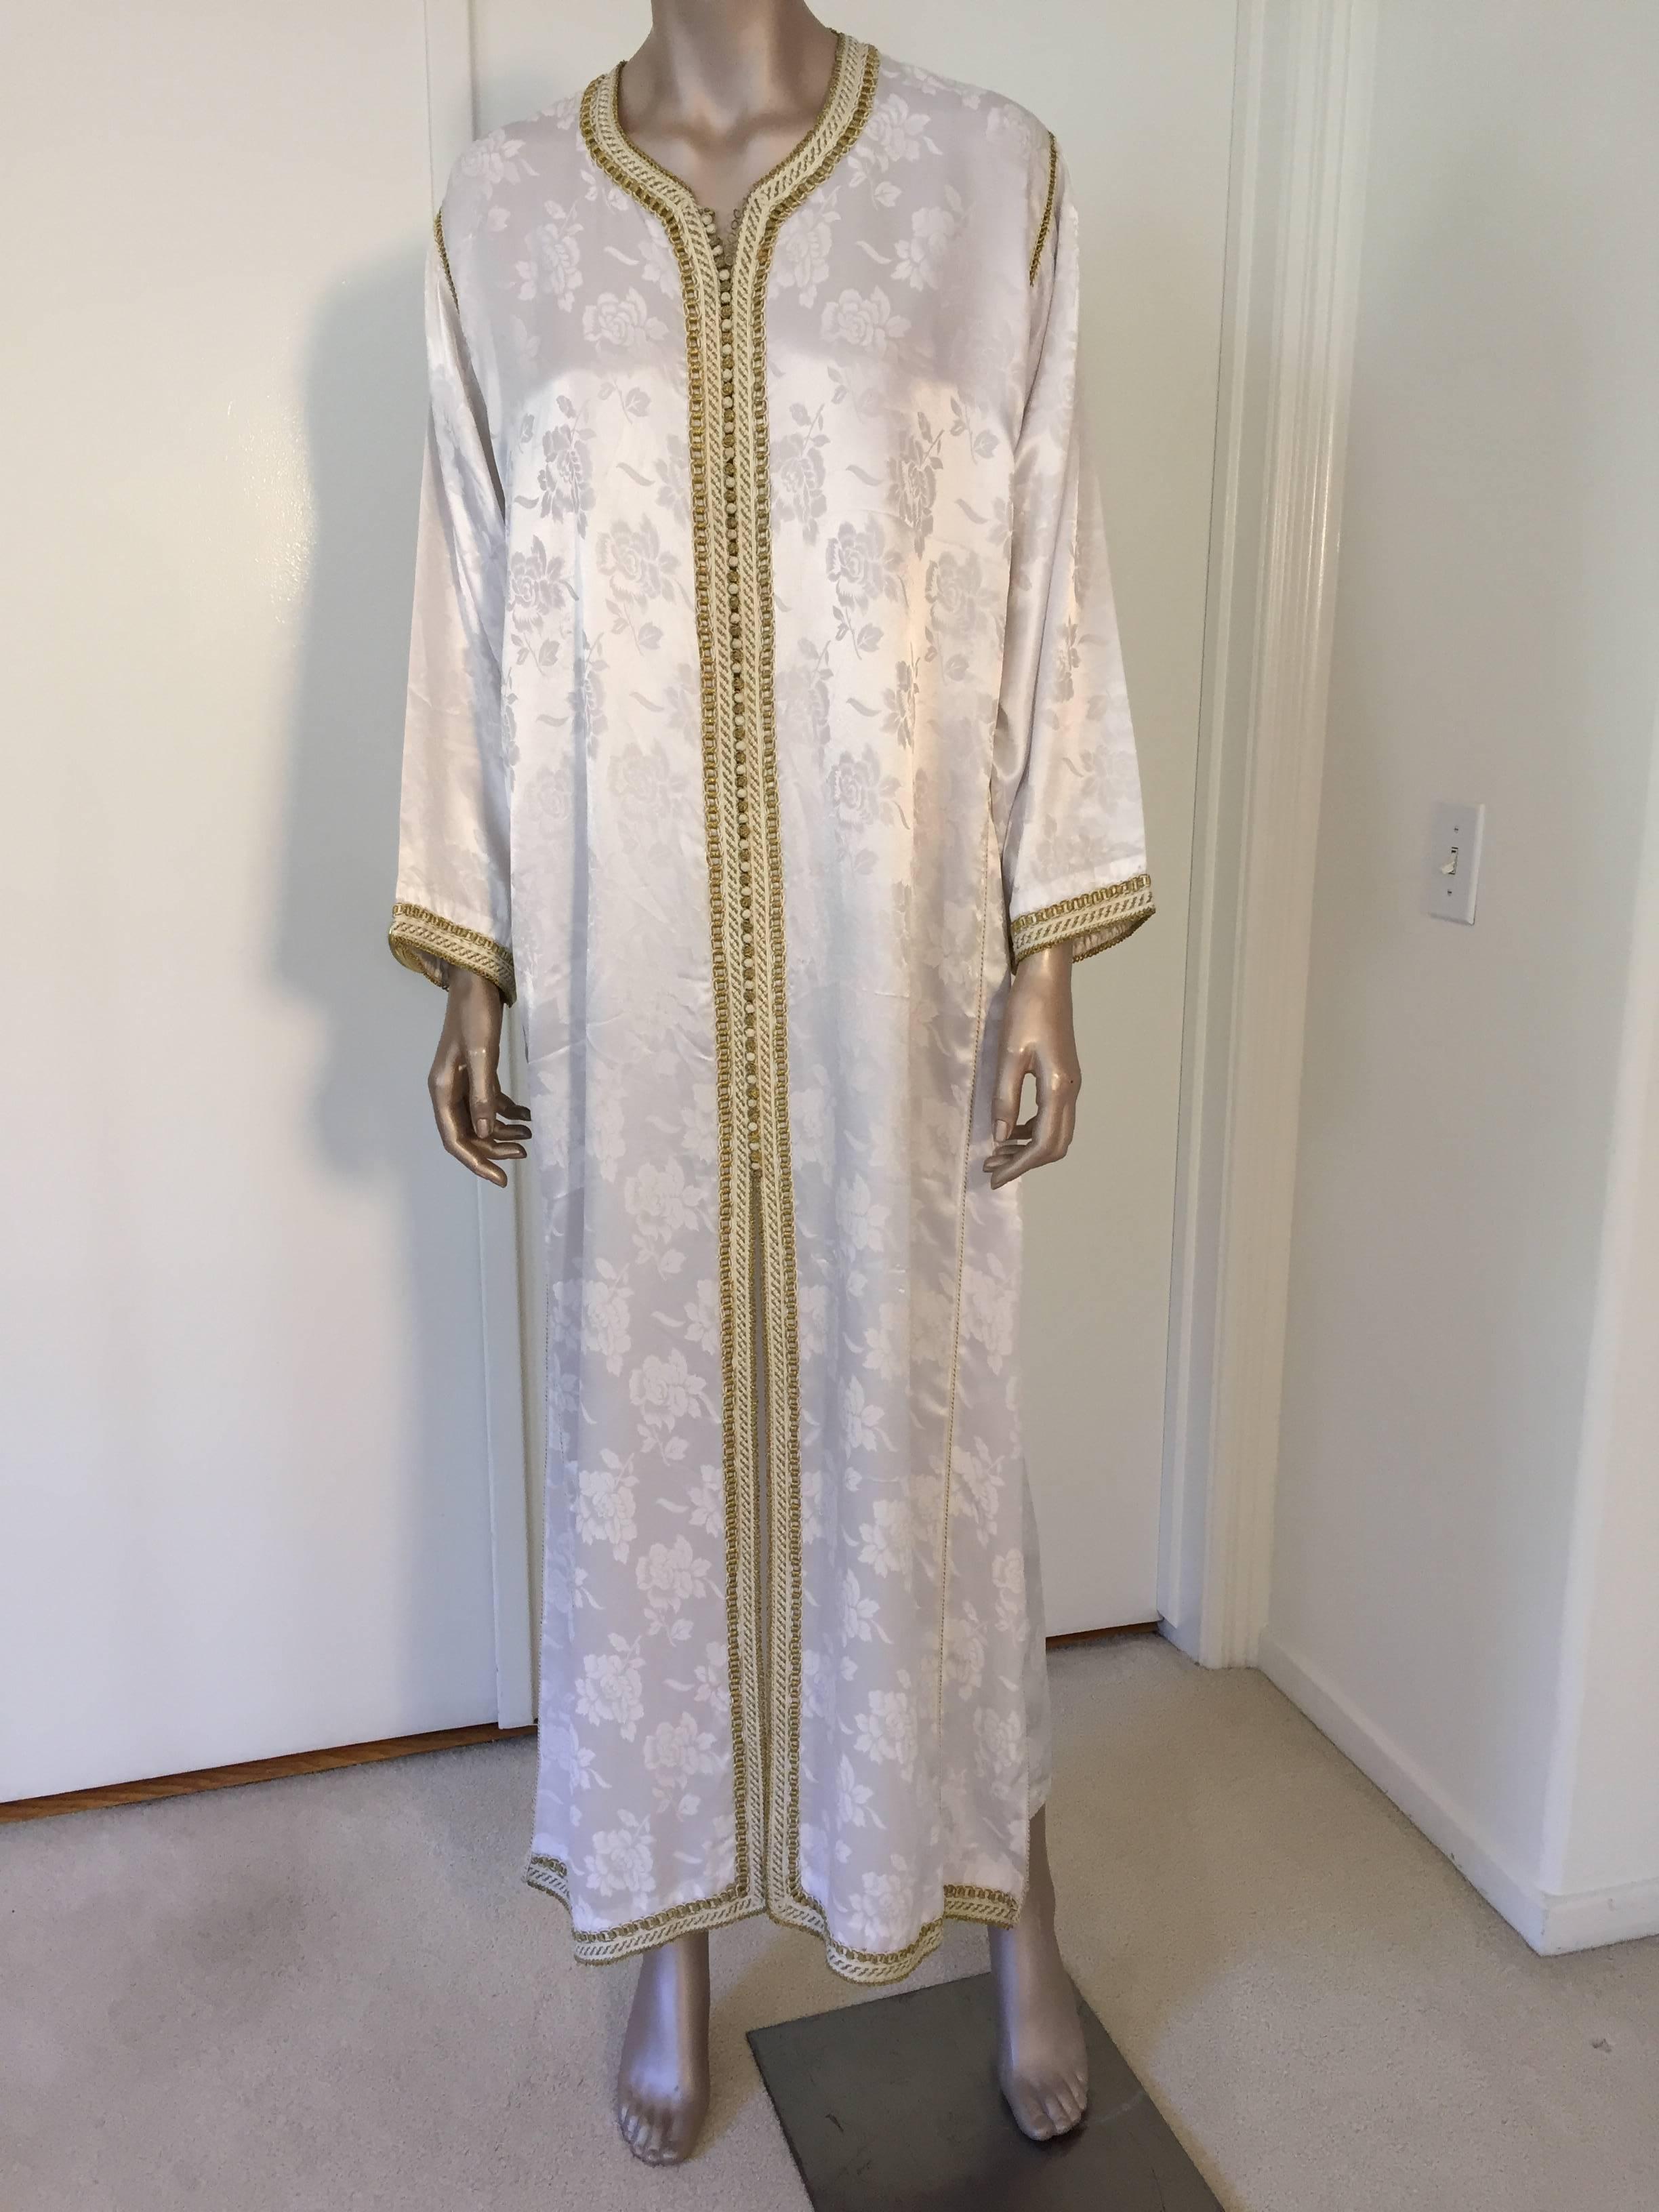 Élégante robe caftan marocaine blanche brodée avec garniture dorée, vers les années 1970. Ce caftan à la robe longue et longue est brodé et embelli entièrement à la main. Robe de soirée marocaine du Moyen-Orient, unique en son genre.
Le caftan